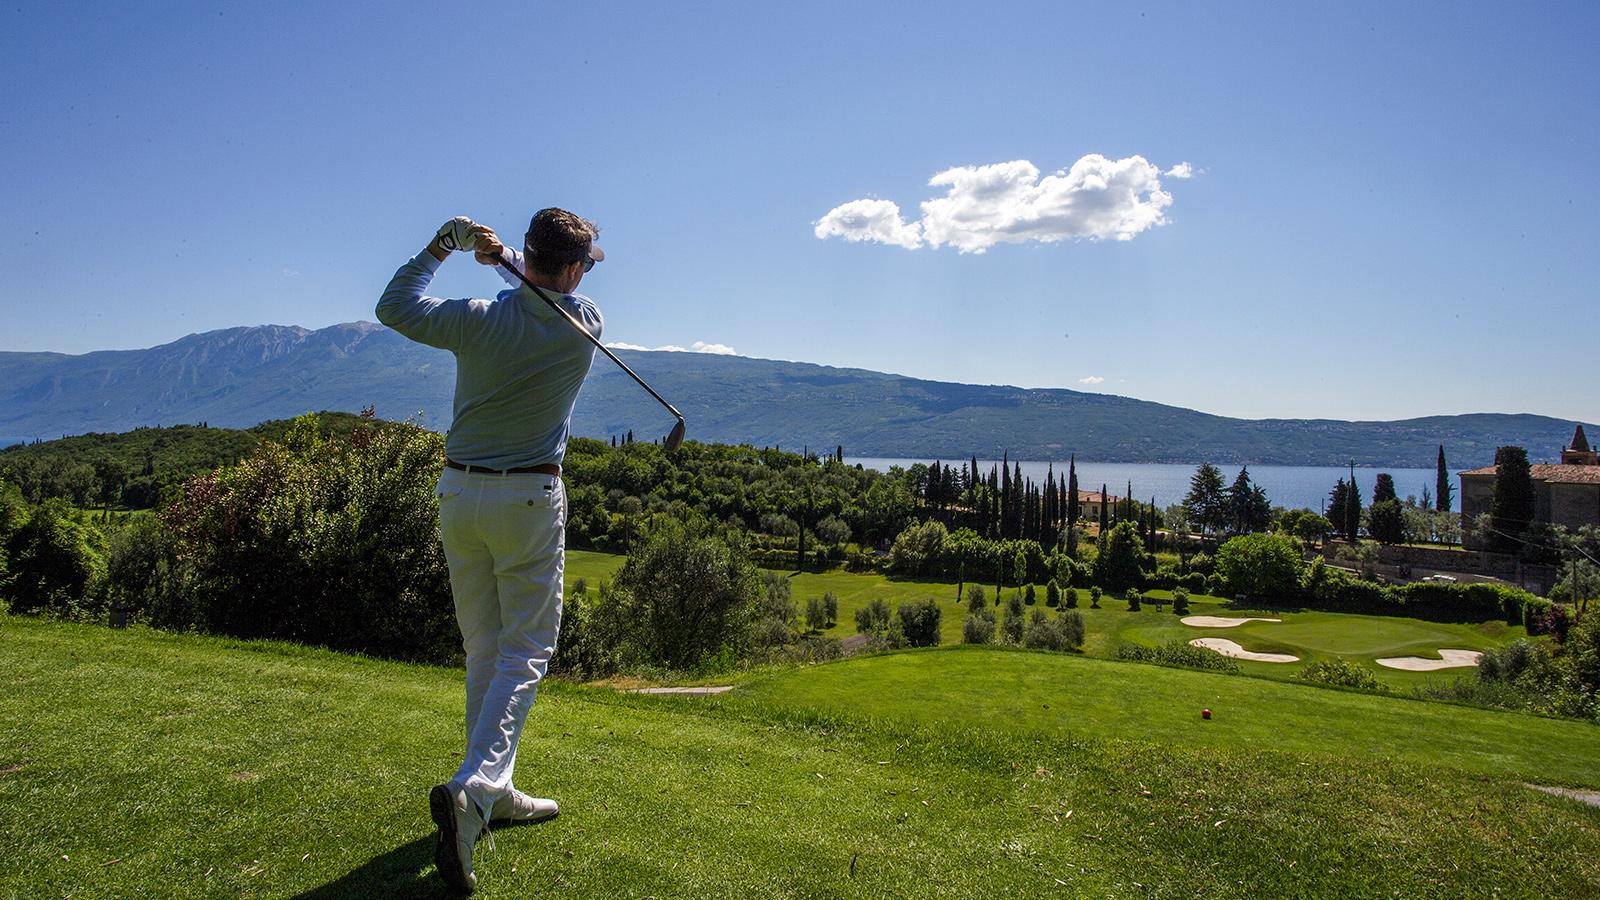 giocare a golf sul Lago di Garda